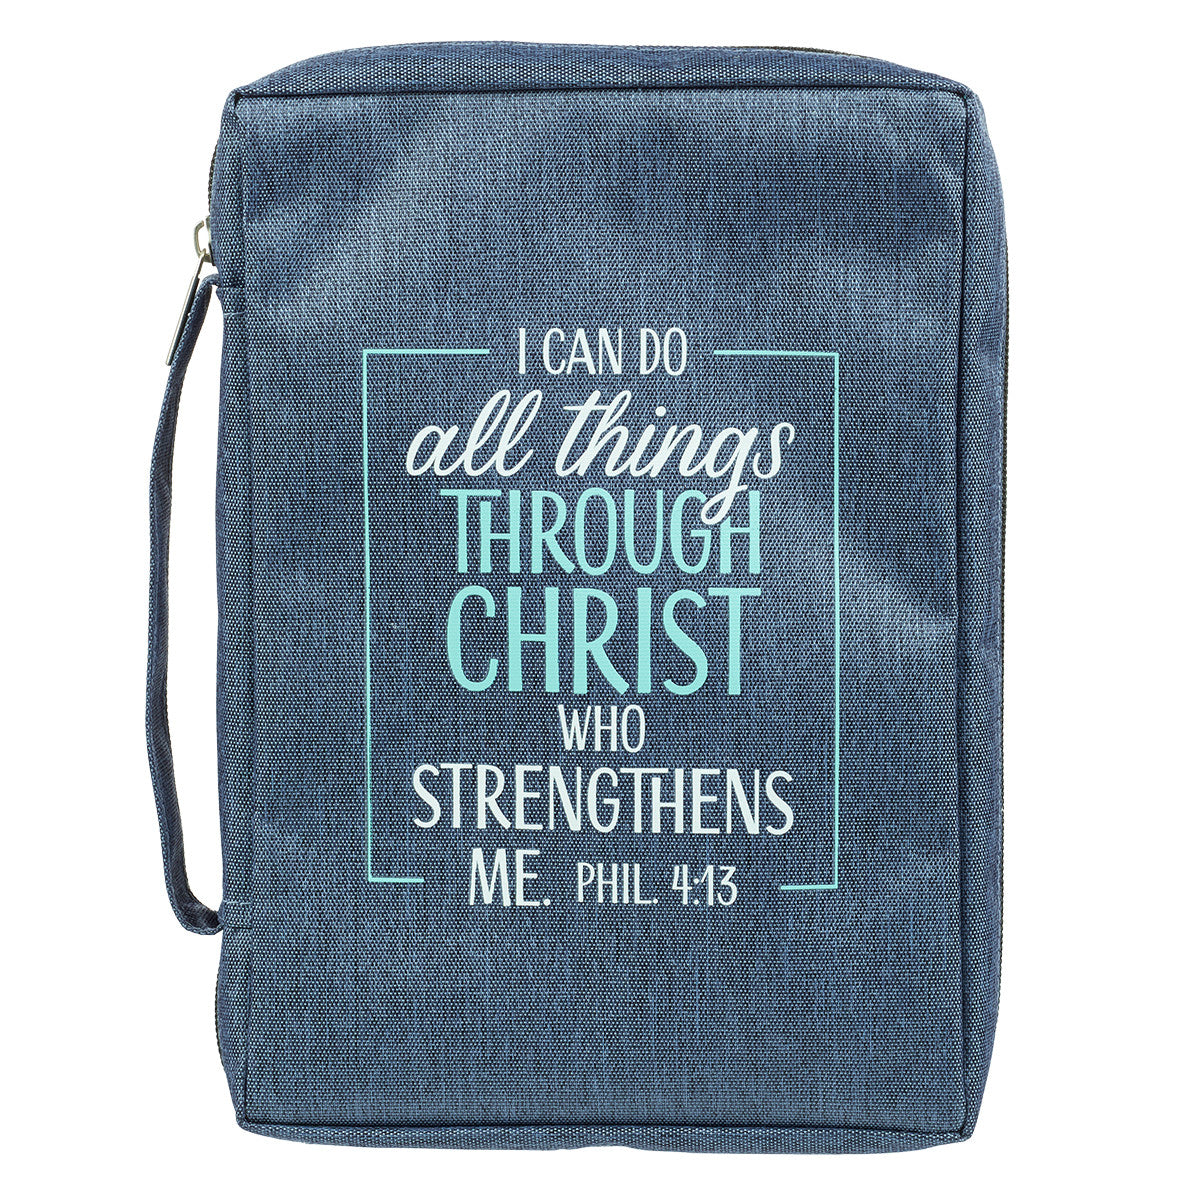 Puedo hacer todas las cosas Cubierta de la Biblia de lona polivinílica azul - Filipenses 4:13